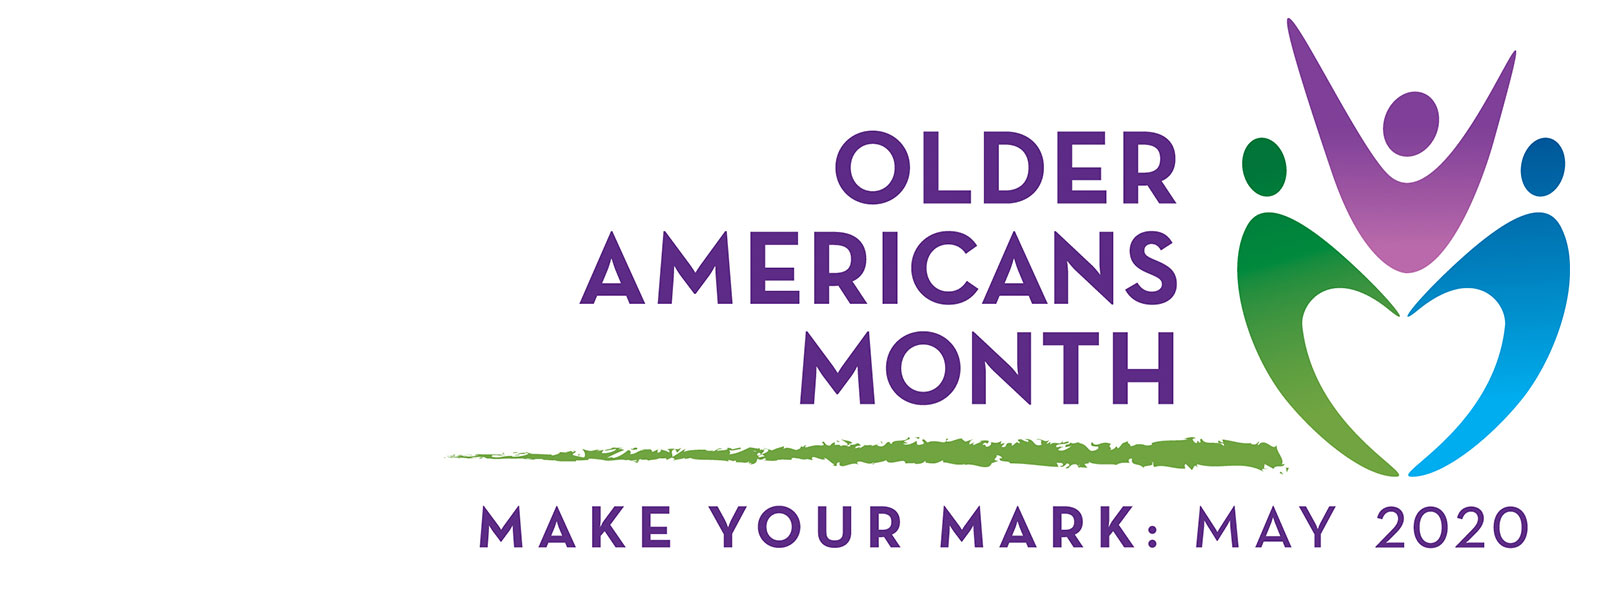 Celebrating National Older Americans Month.